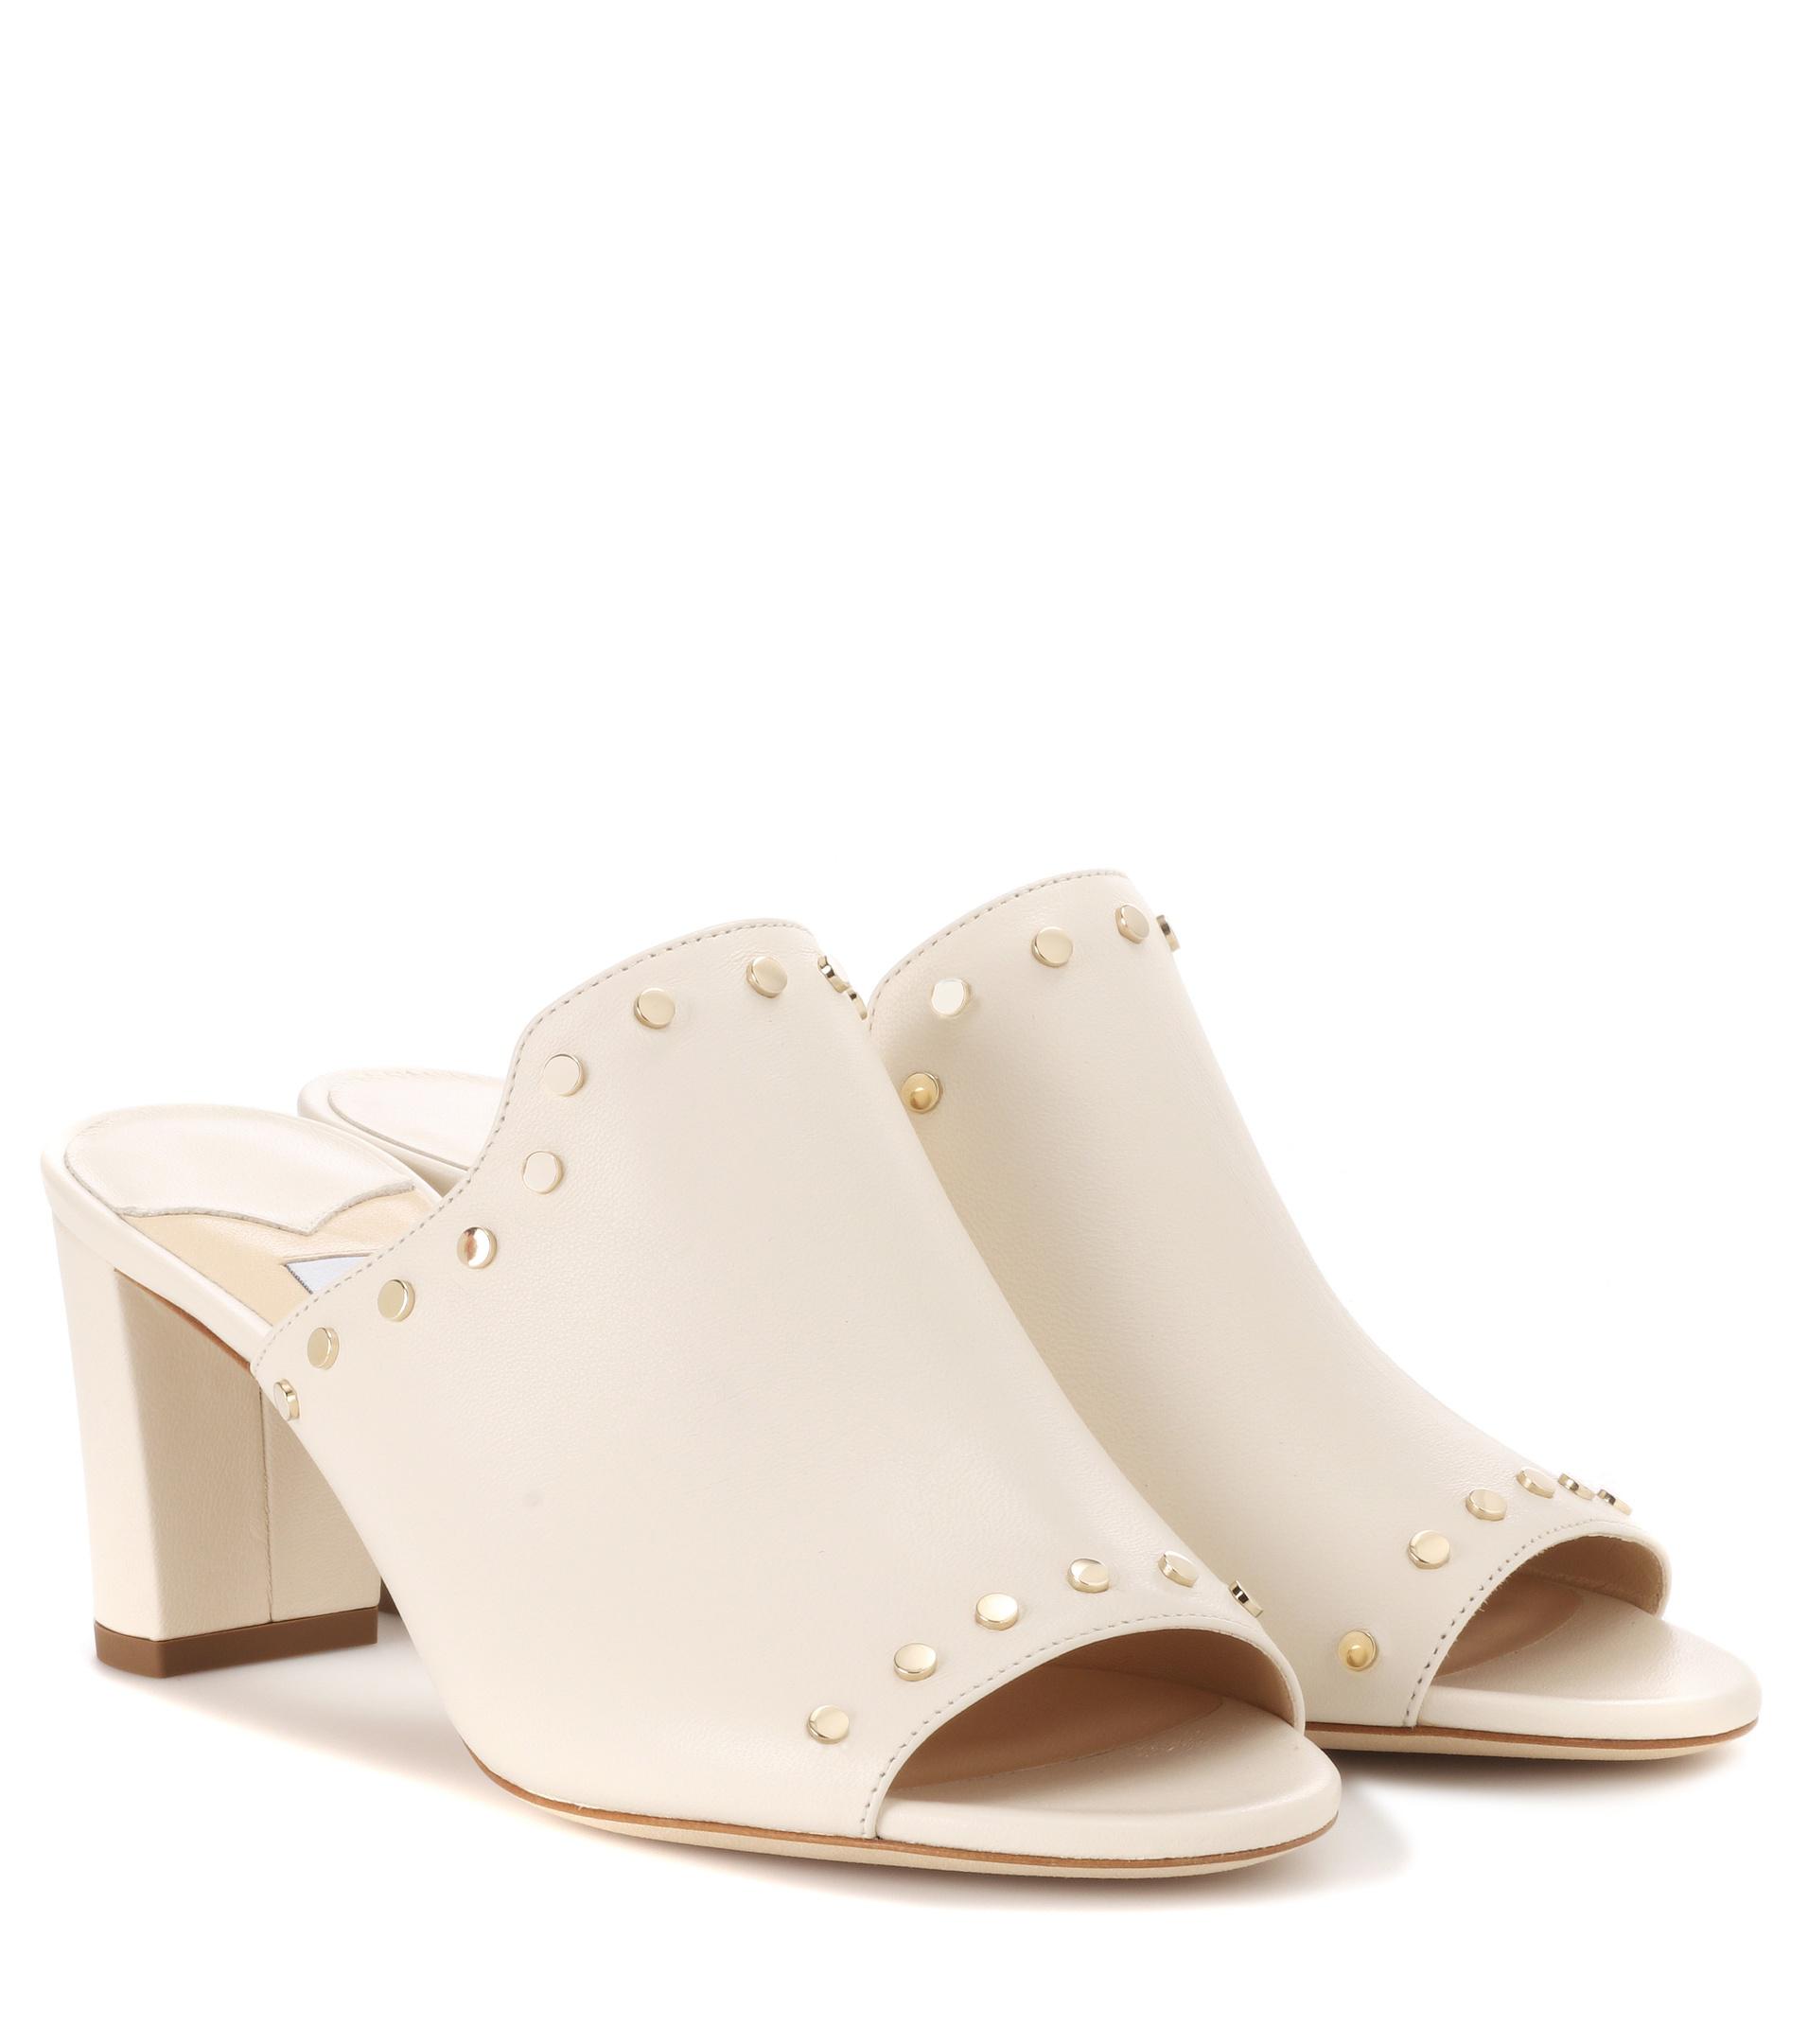 Lyst - Jimmy Choo Myla Open-toe Leather Mules in White